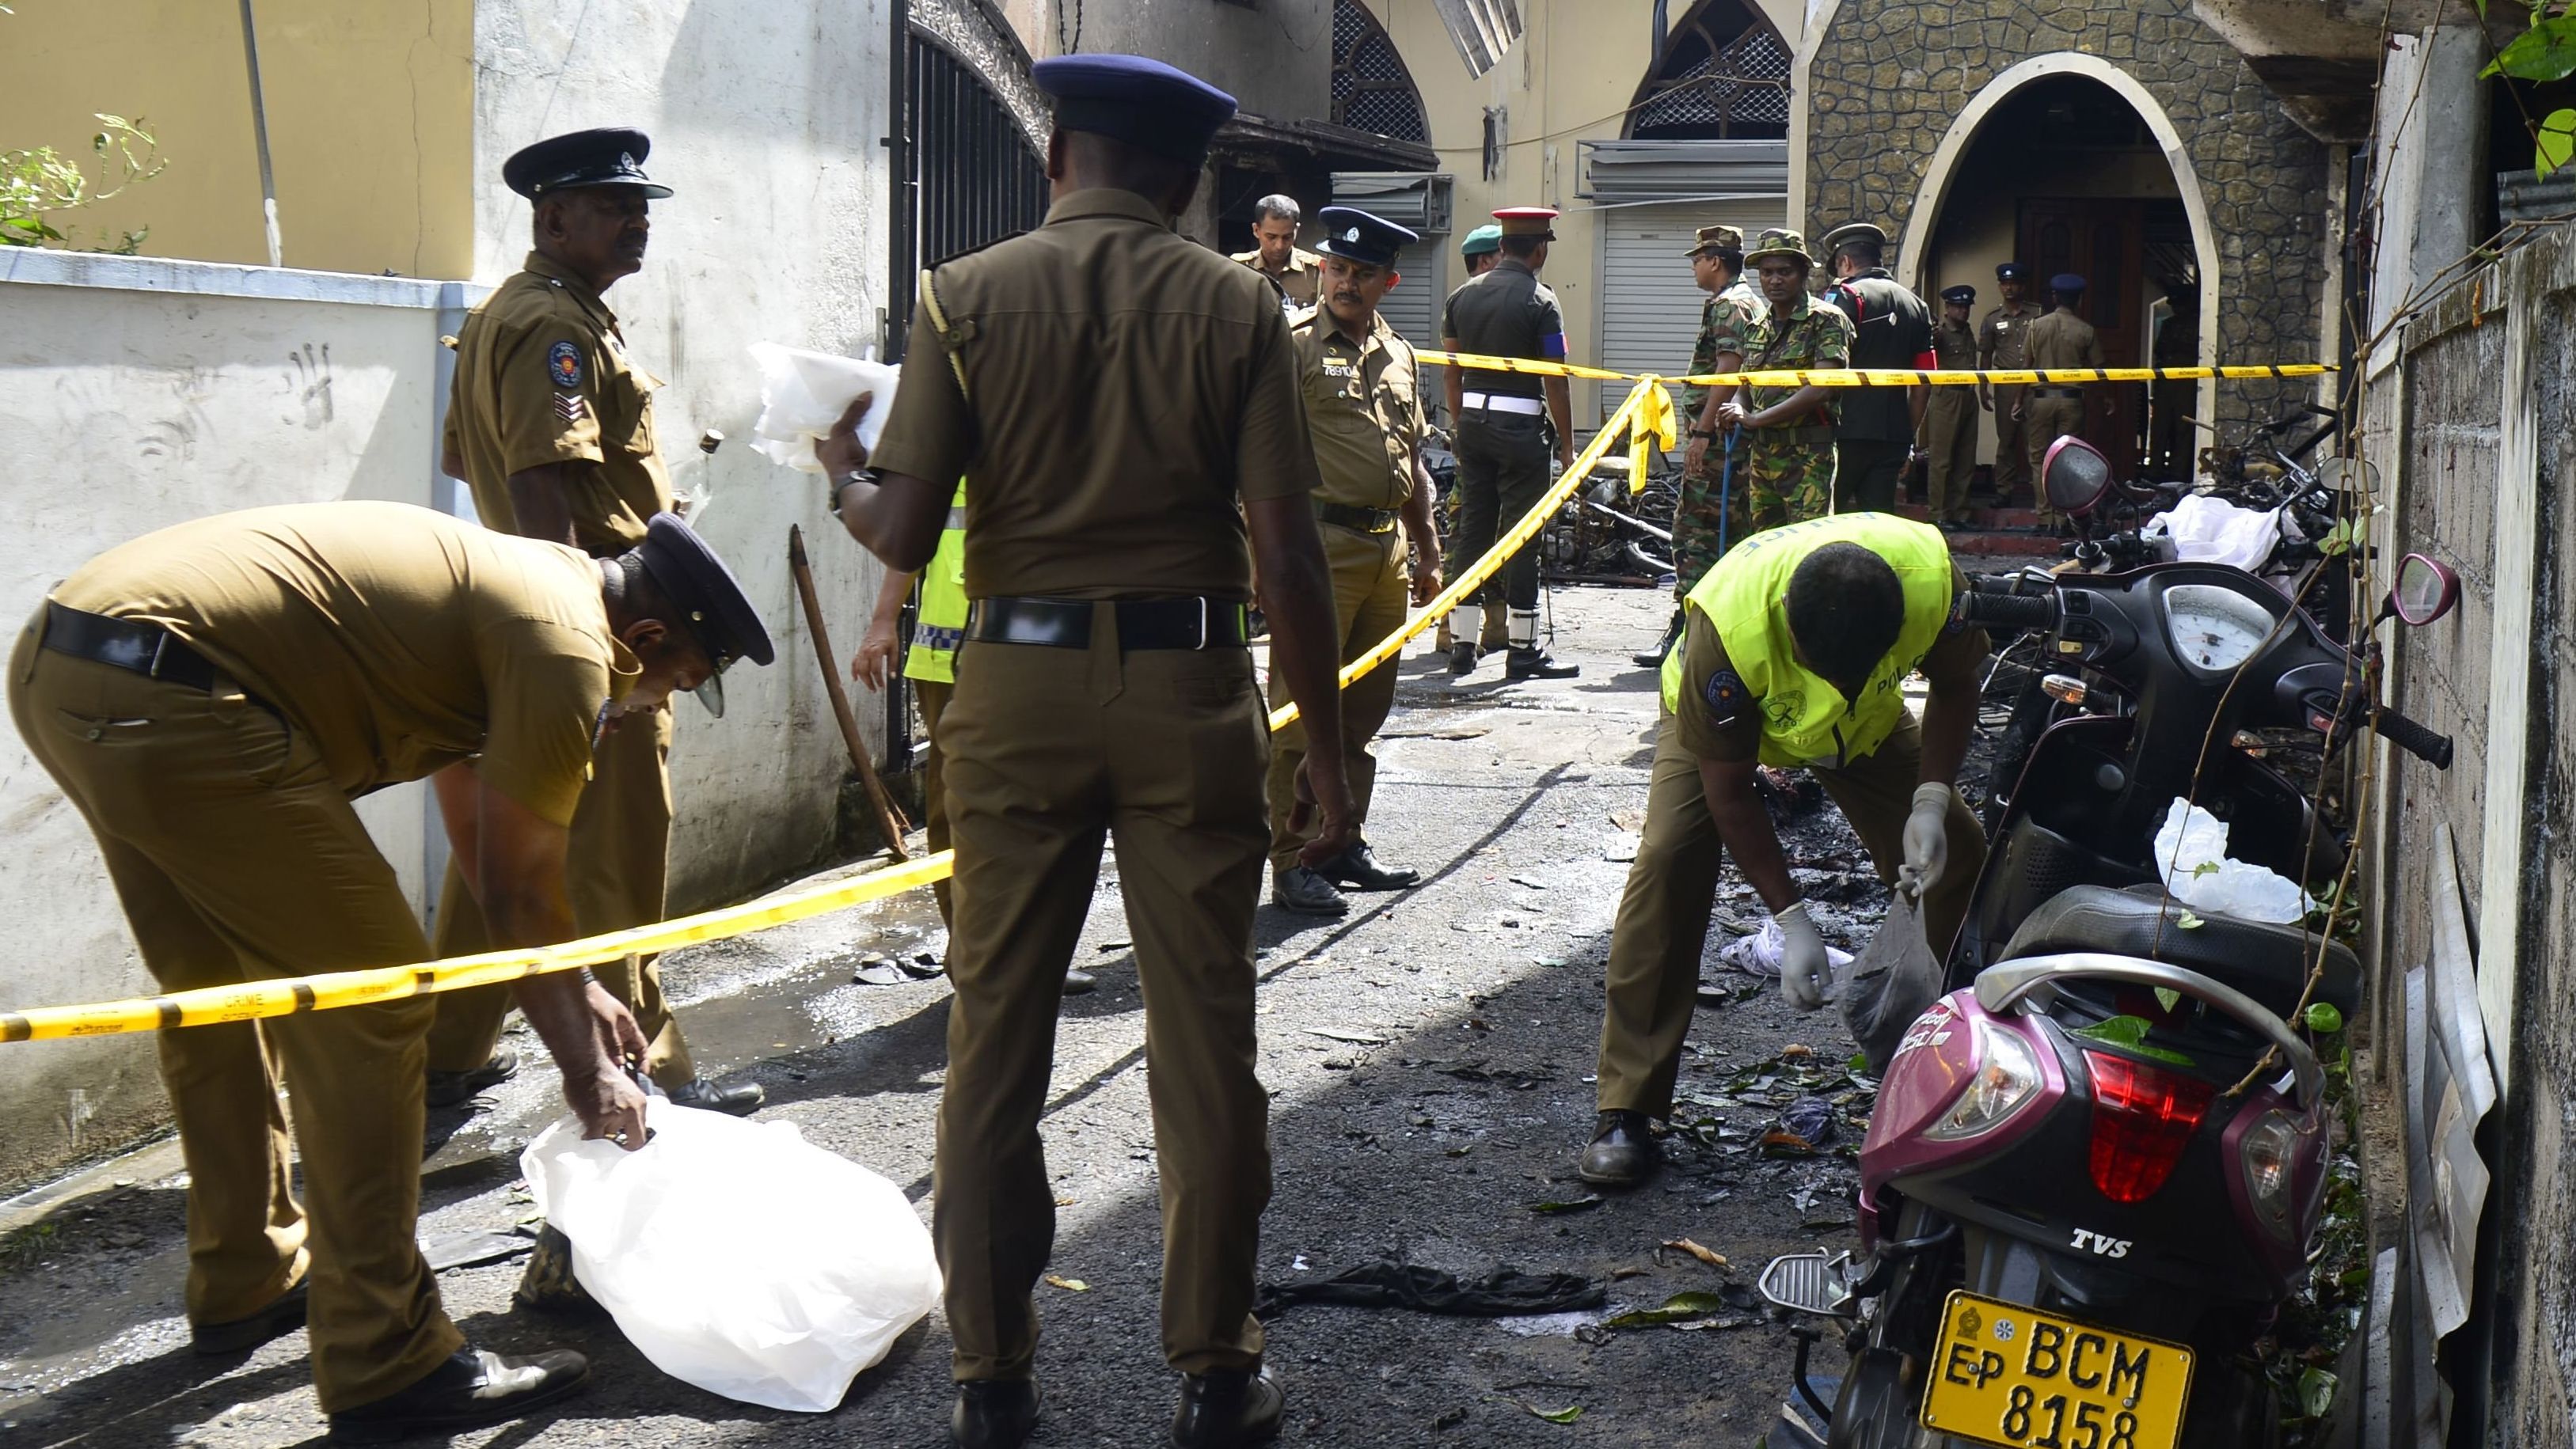 Security personnel and investigators sift through debris outside Zion Church in Batticaloa.